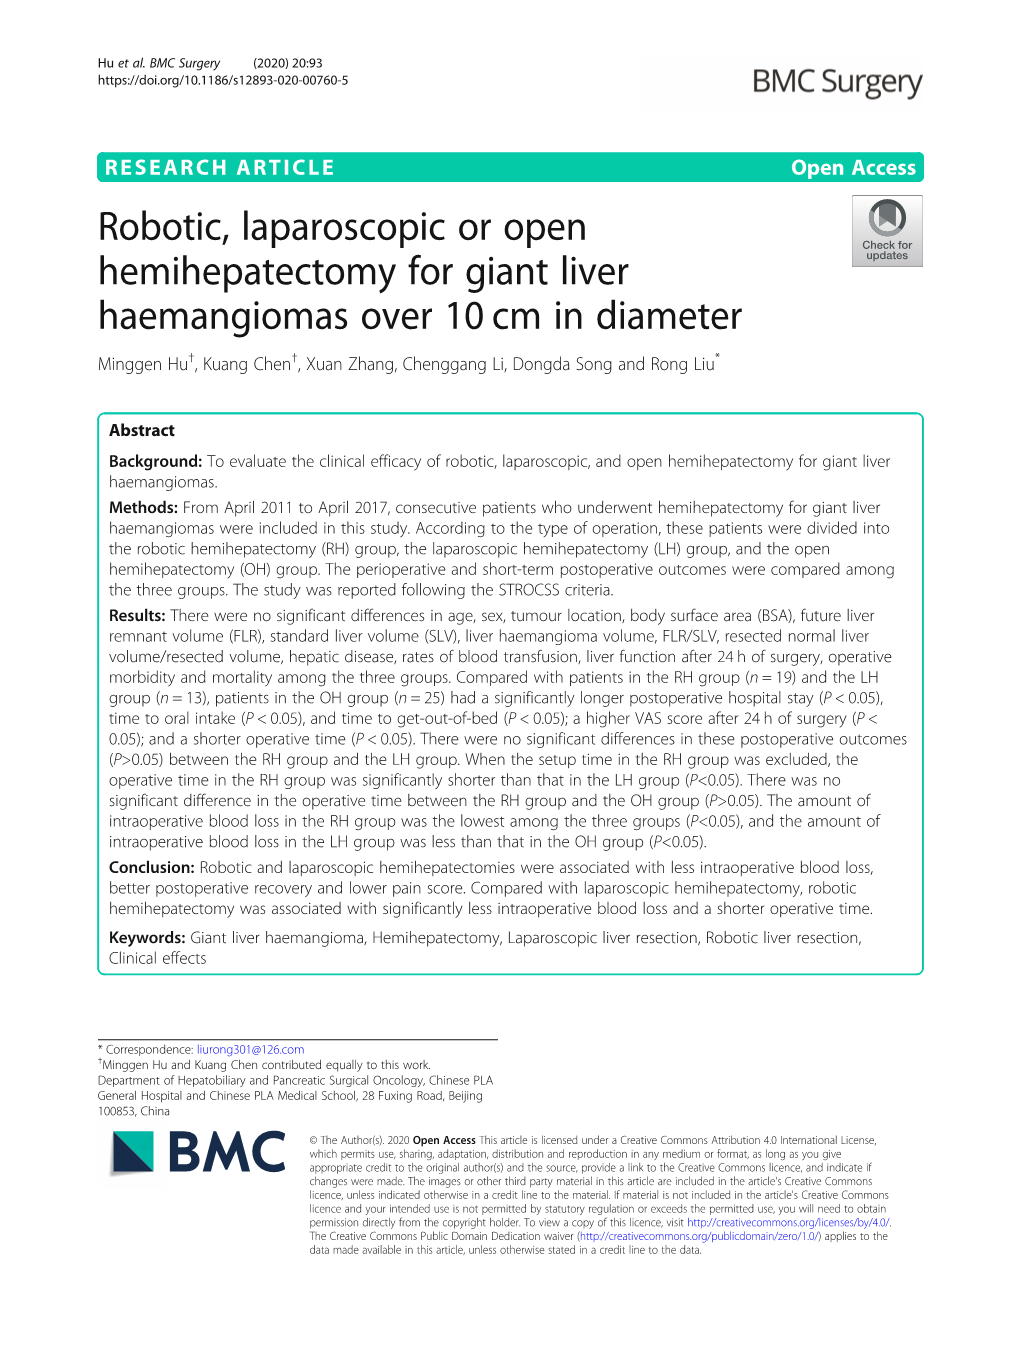 Robotic, Laparoscopic Or Open Hemihepatectomy for Giant Liver